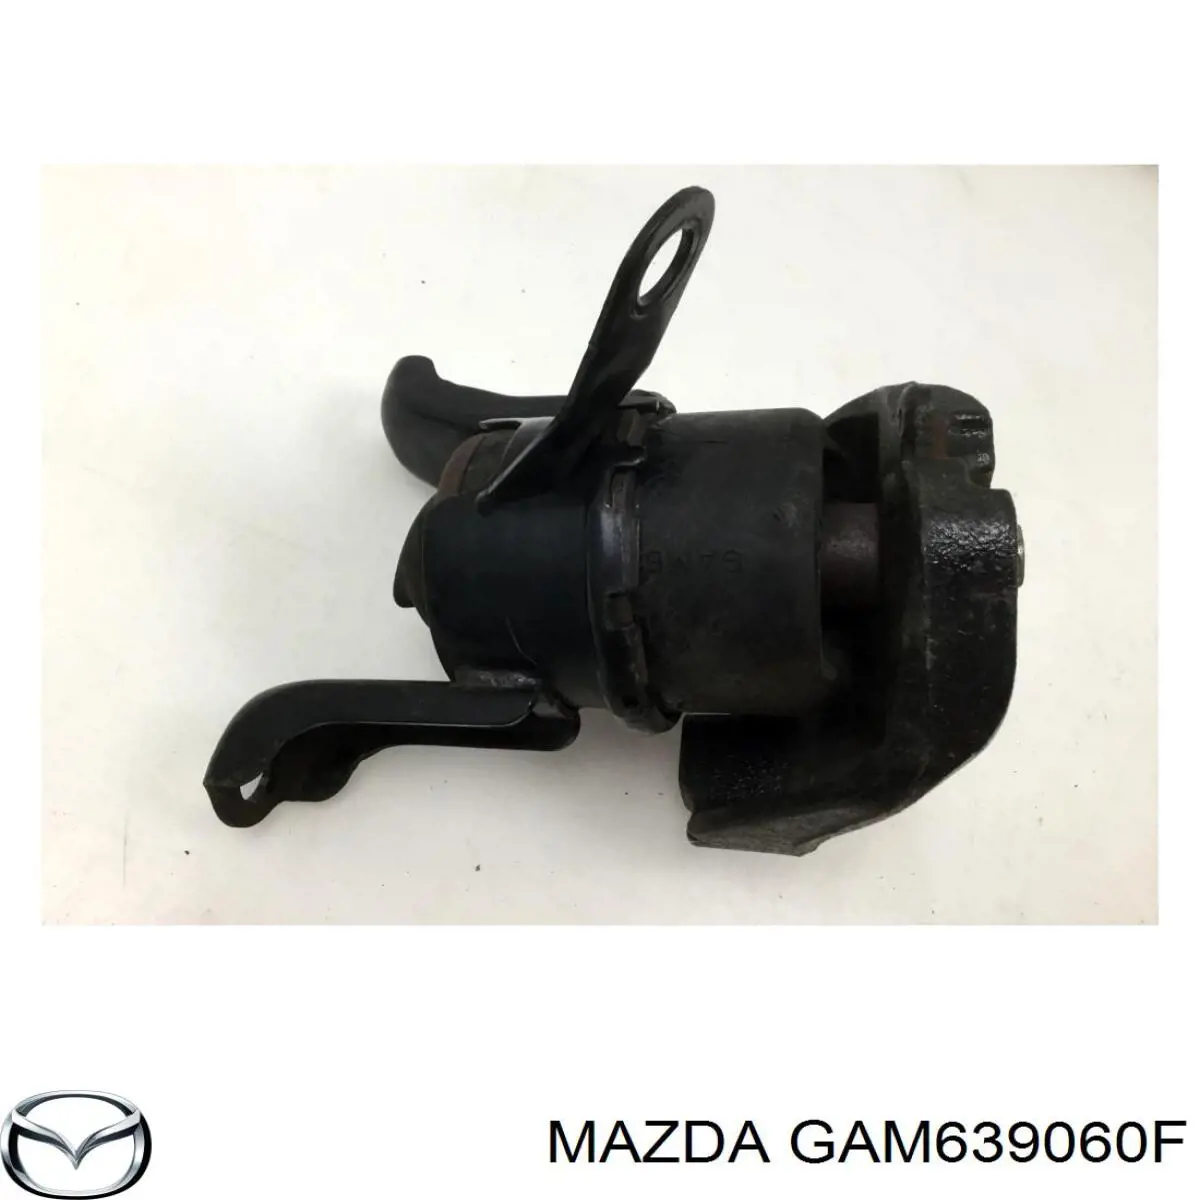 GAM639060F Mazda coxim (suporte direito de motor)